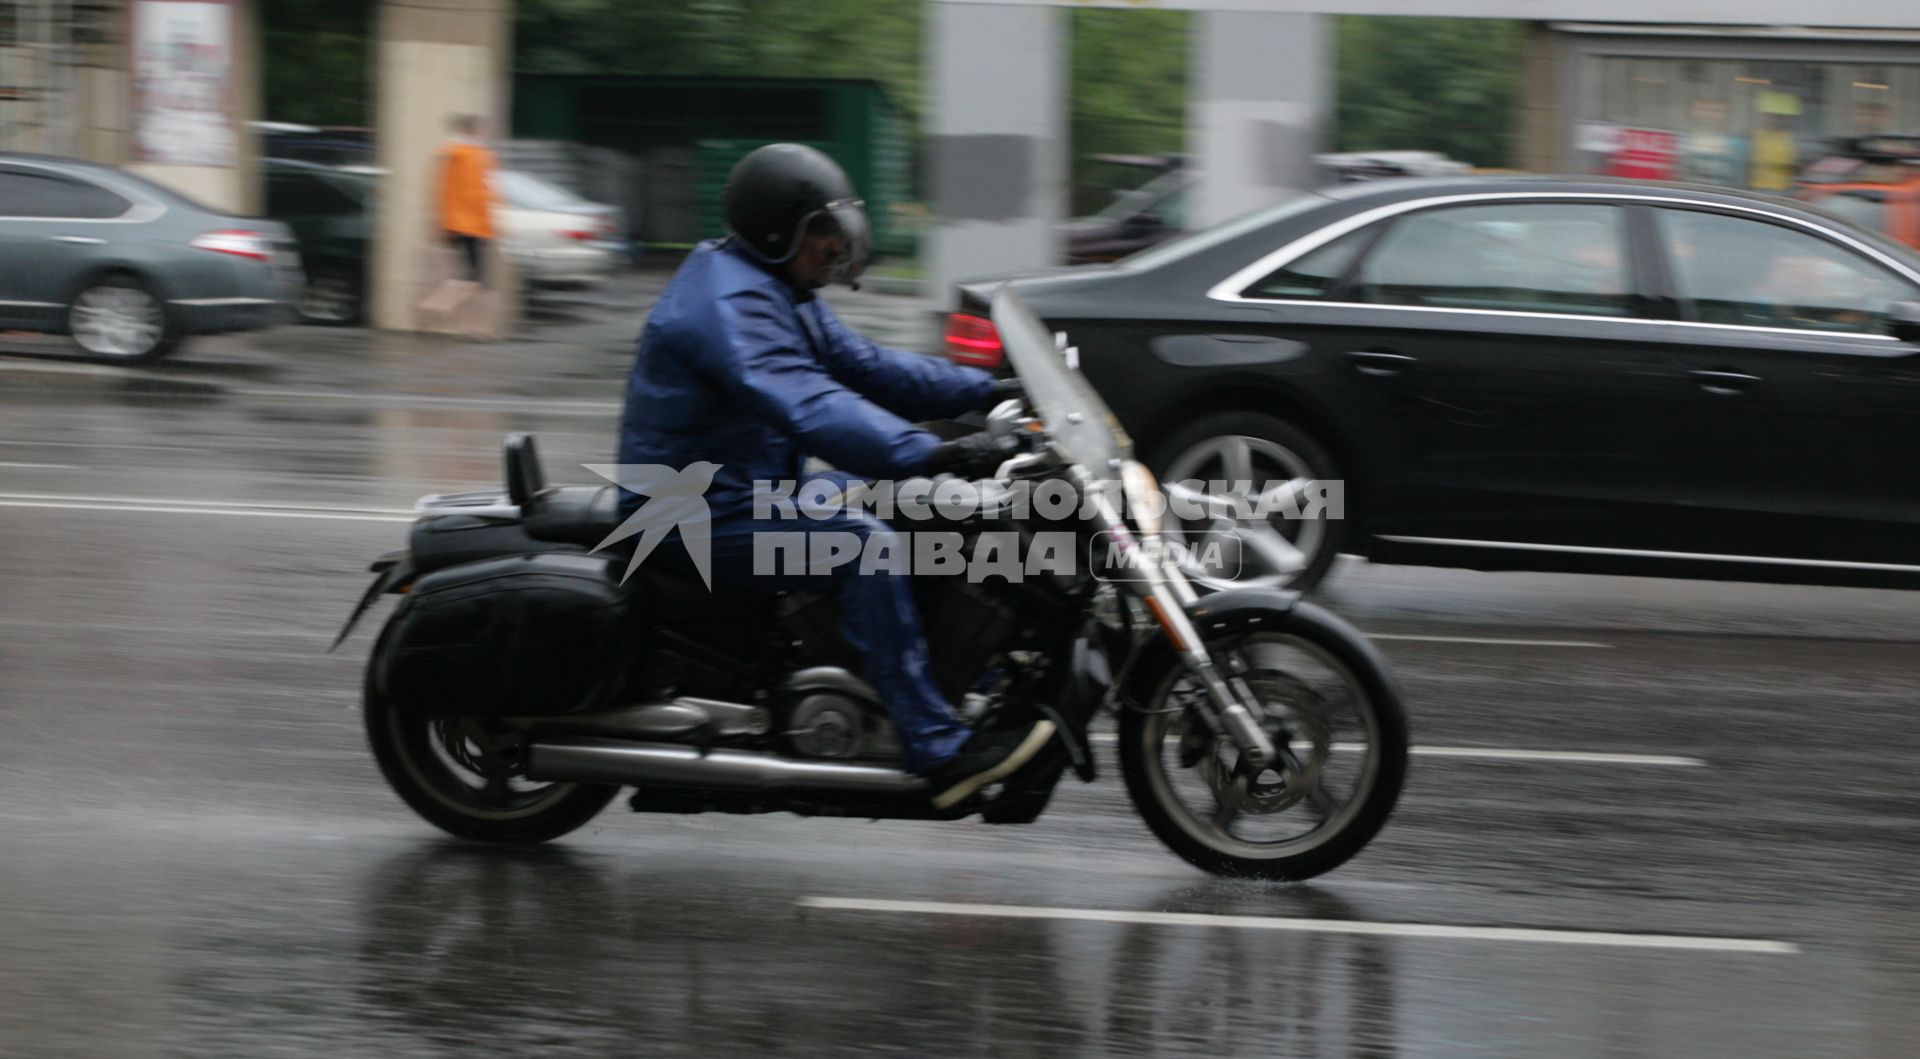 Дождь в городе. На снимке: мотоциклист на мокрой дороге.